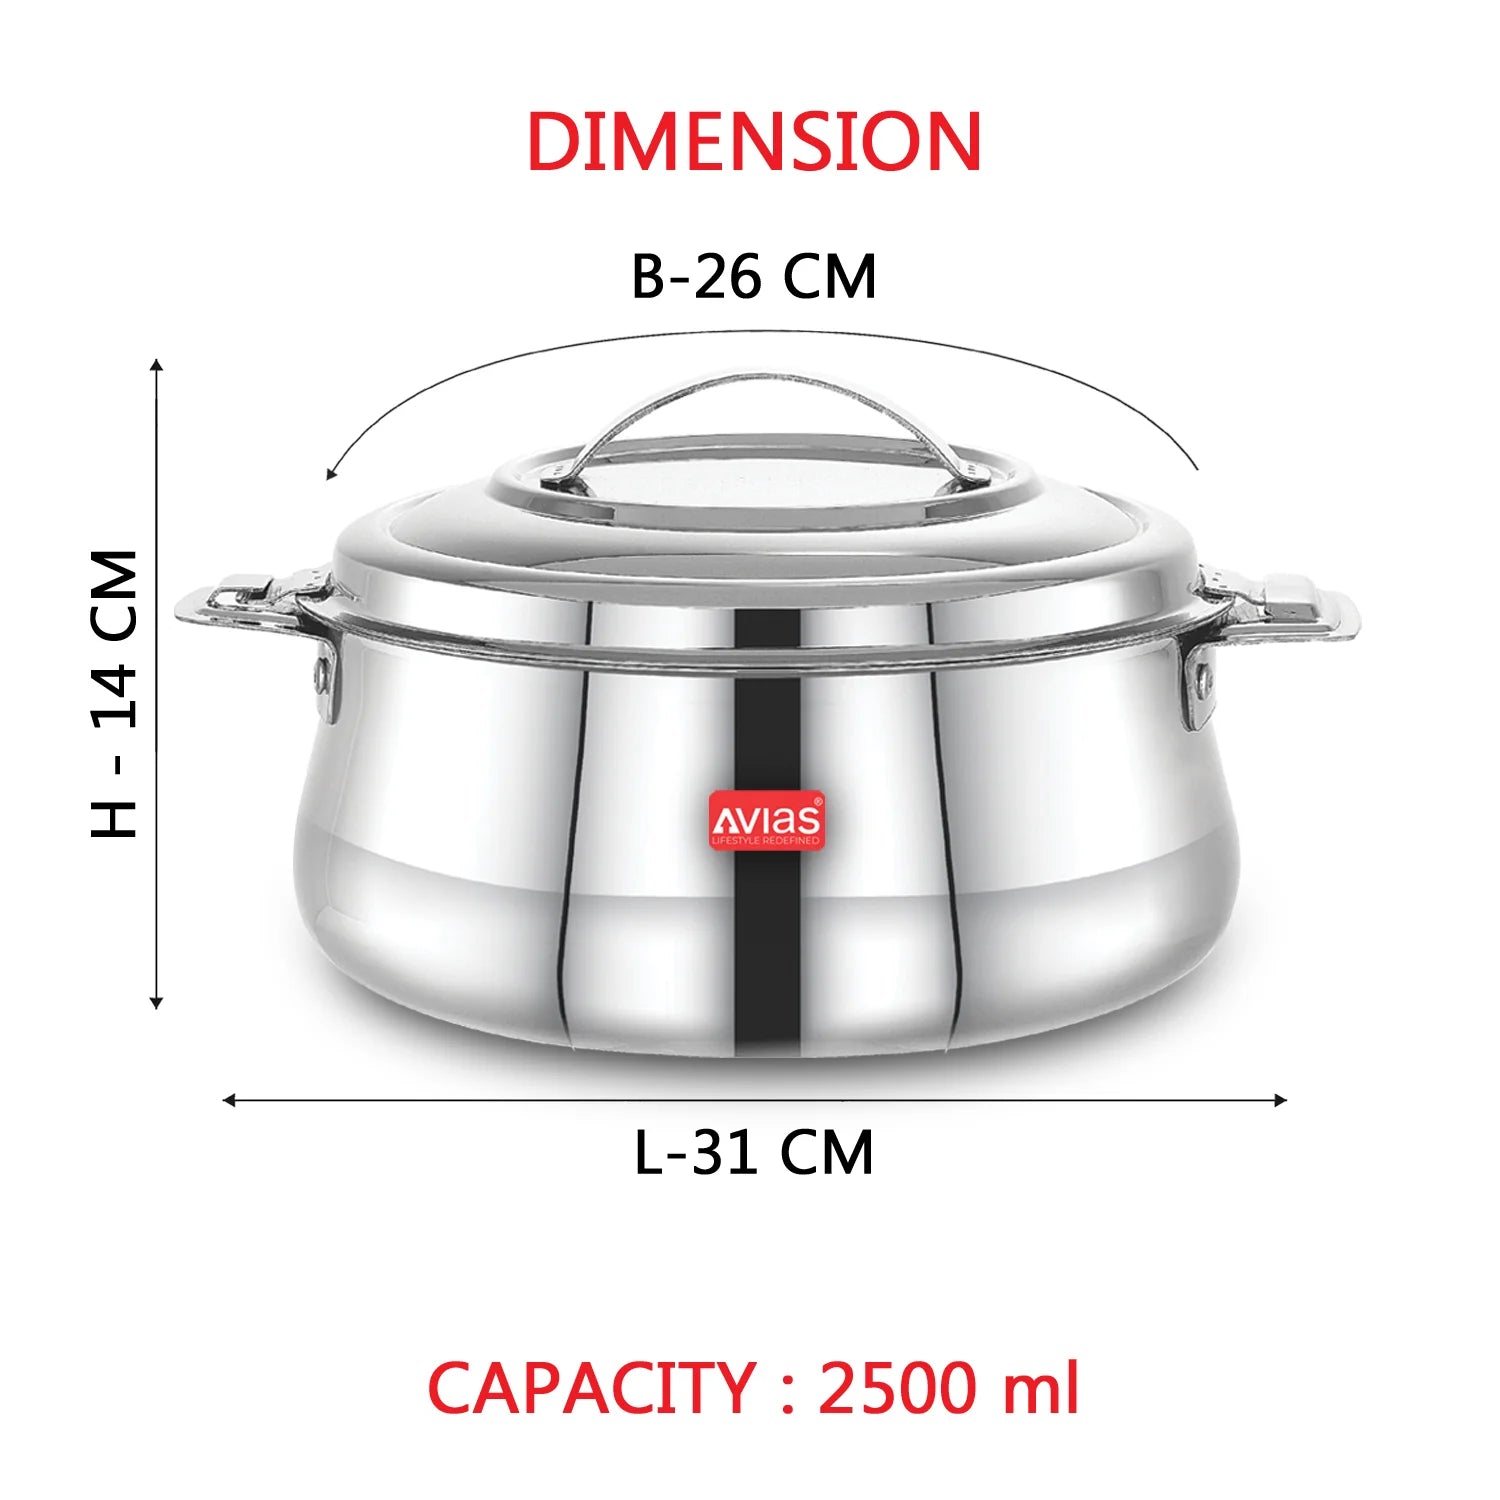 Riara Silver Premium Stainless steel casserole- 2500ml 